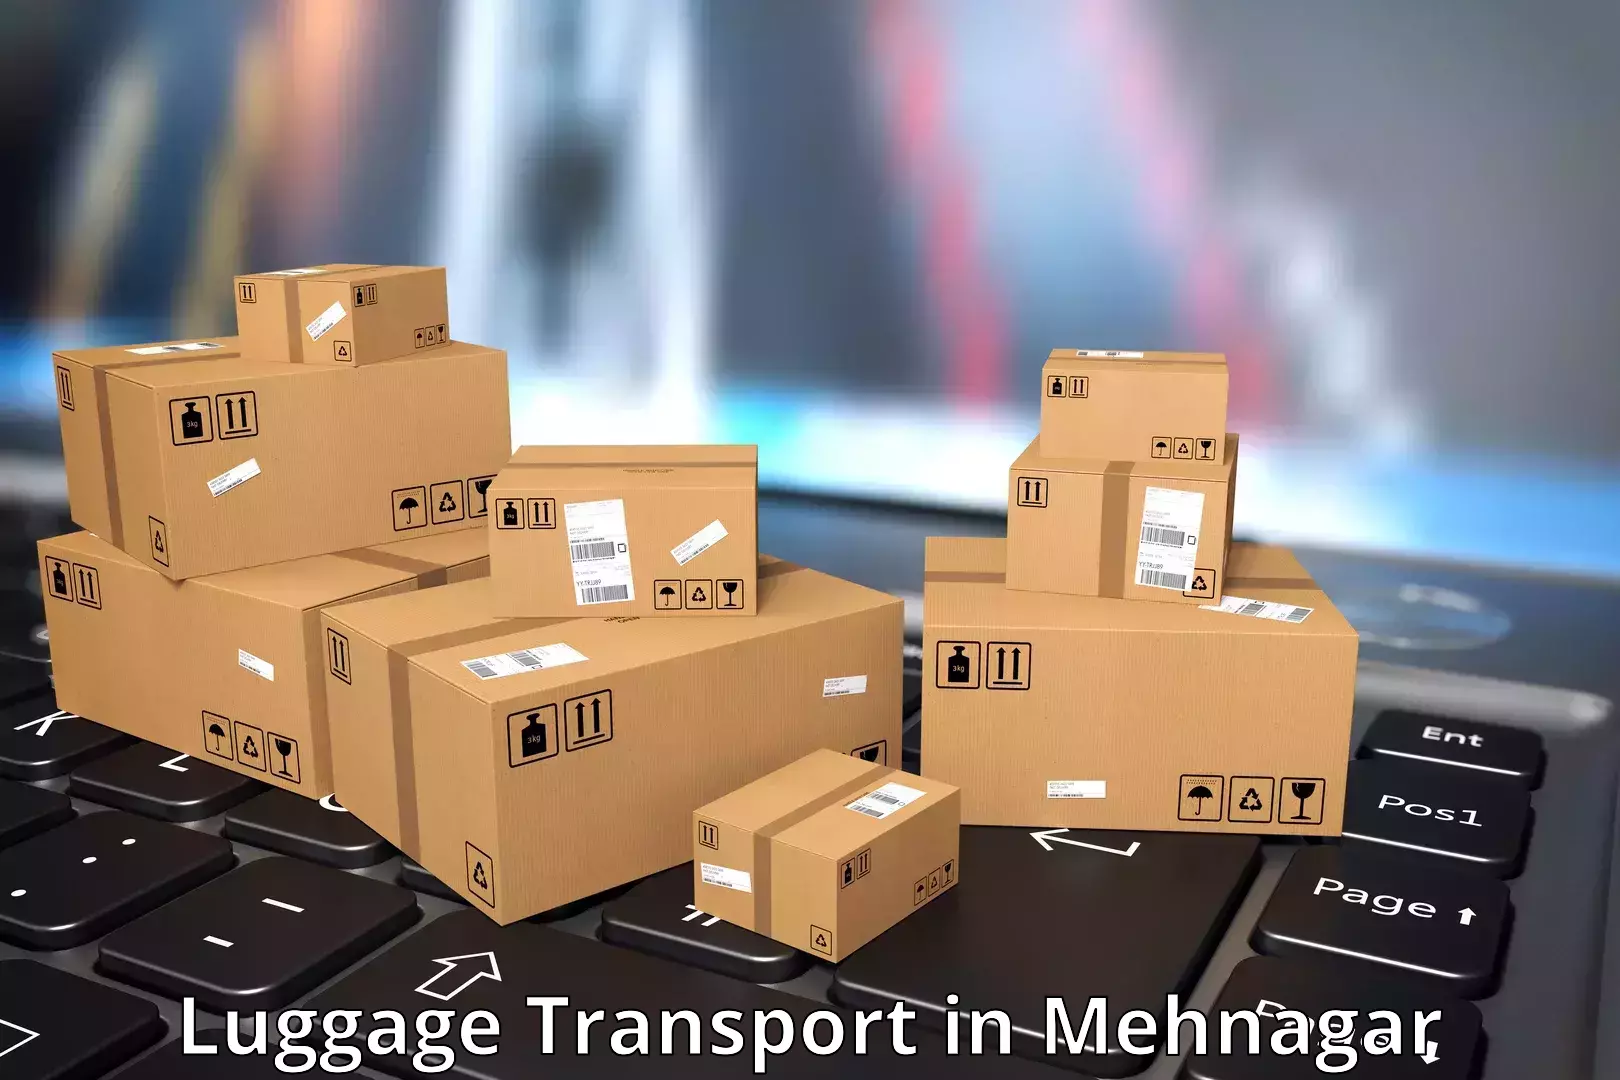 Luggage transport schedule in Mehnagar